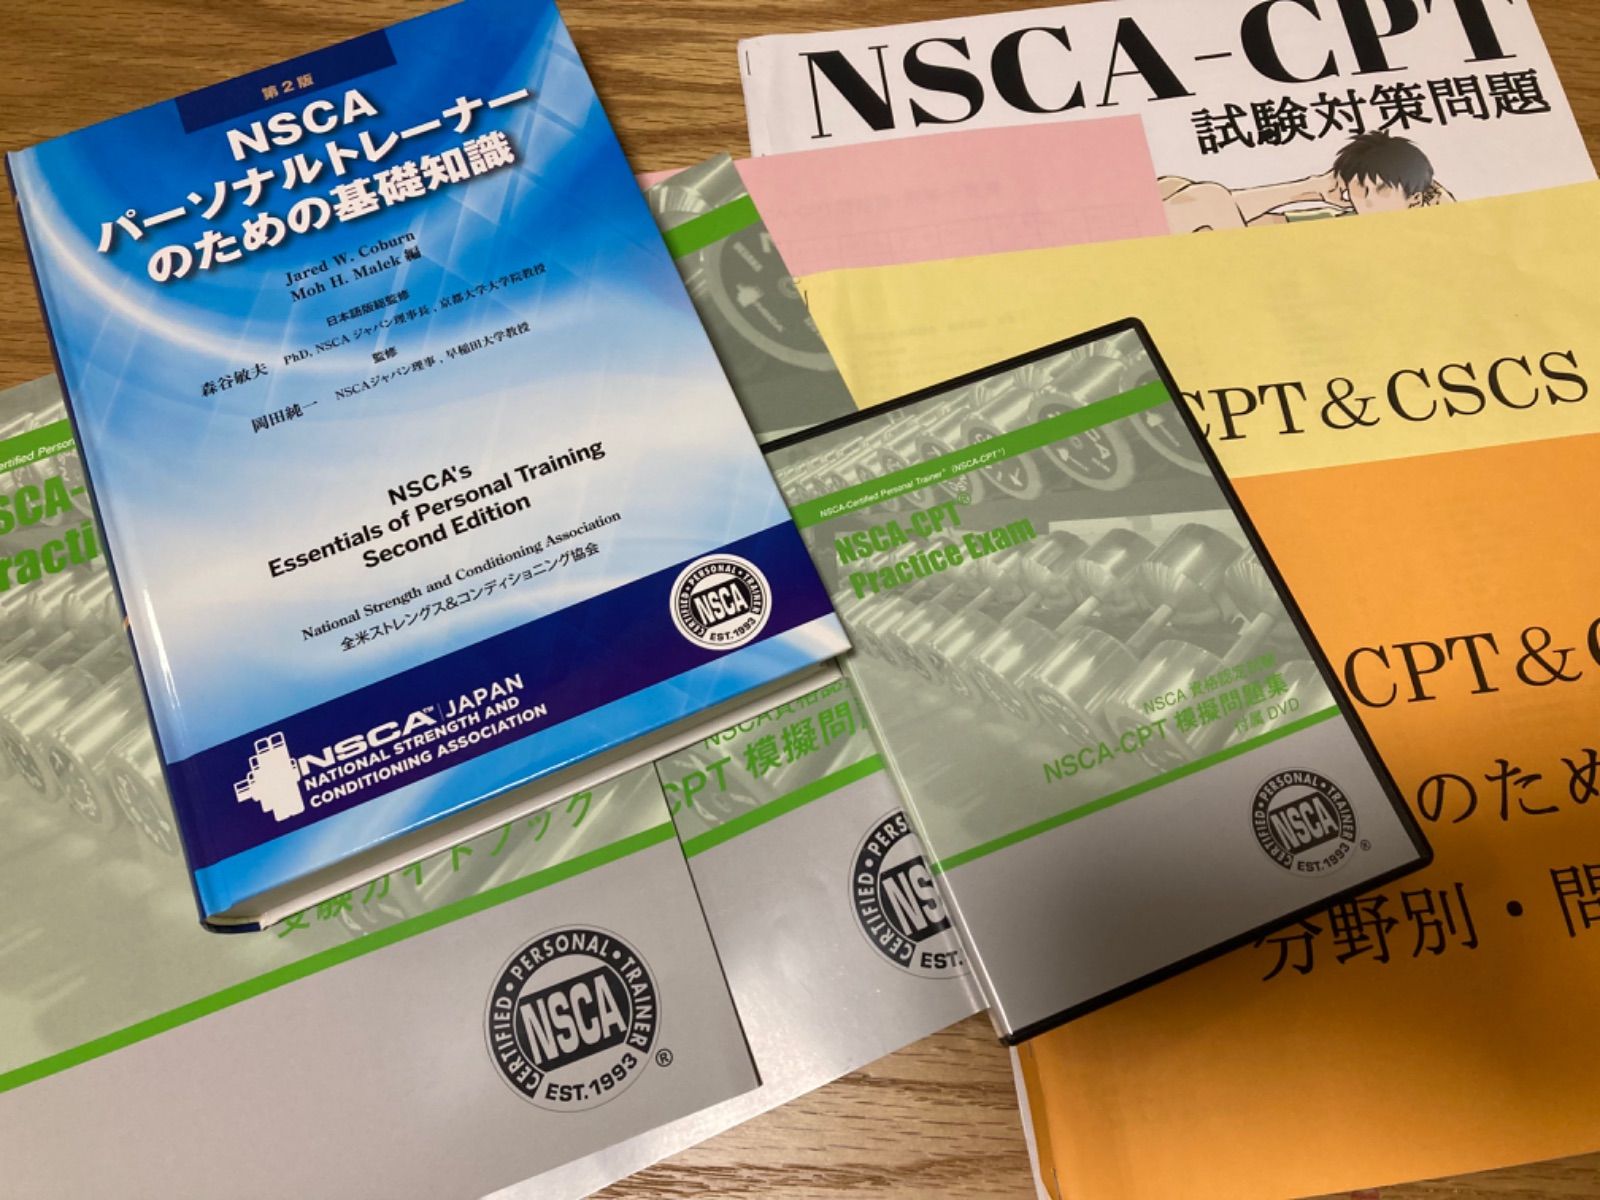 NSCAパーソナルトレーナーのための基礎知識 NSCA CPT 問題集セット